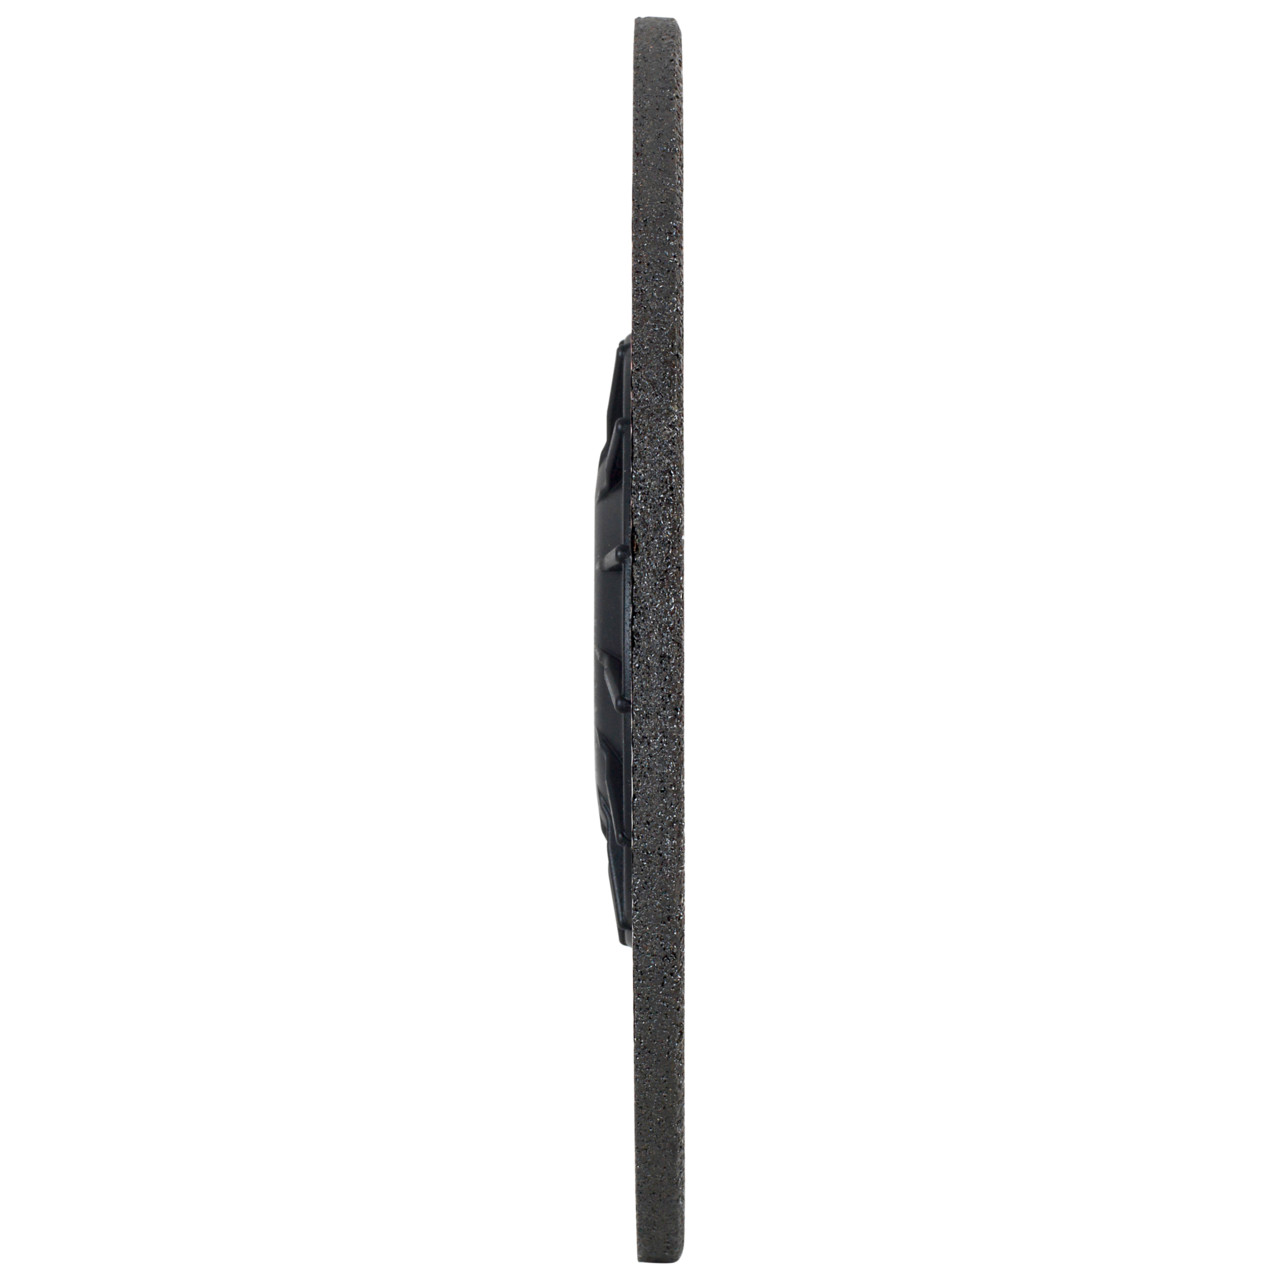 TYROLIT slijpschijf DxUxH 178x7x22,23 VIBSTAR voor roestvrij staal, vorm: 27 - offset-uitvoering, Art. 474524